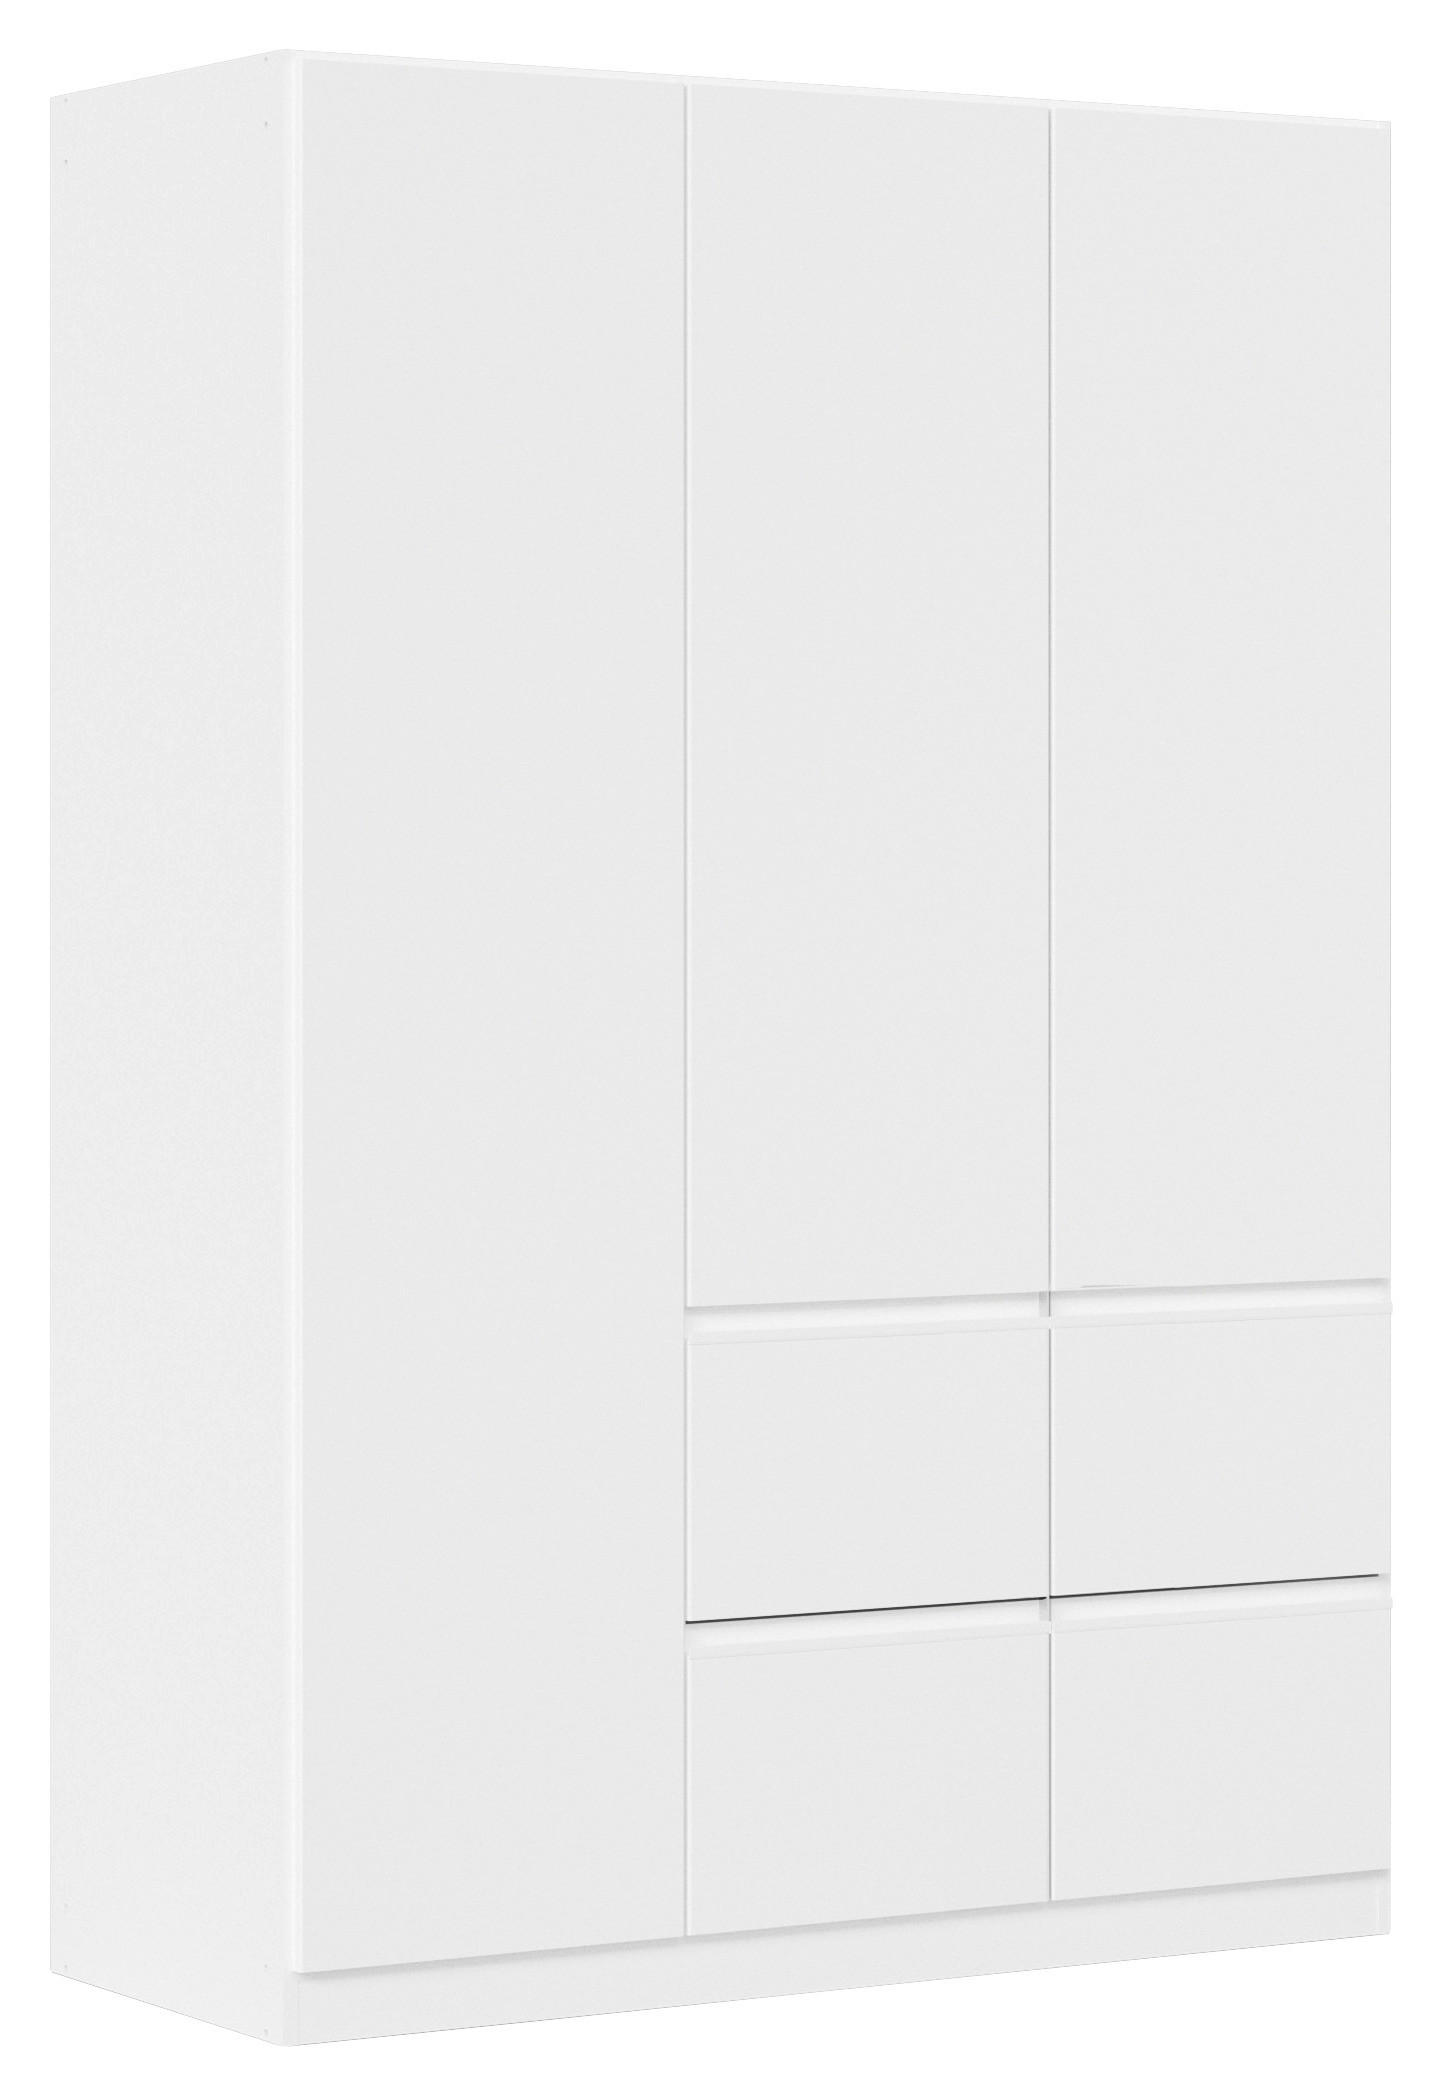 DREHTÜRENSCHRANK 3-türig Weiß  - Weiß, Trend, Holzwerkstoff/Kunststoff (136/197/54cm) - Xora